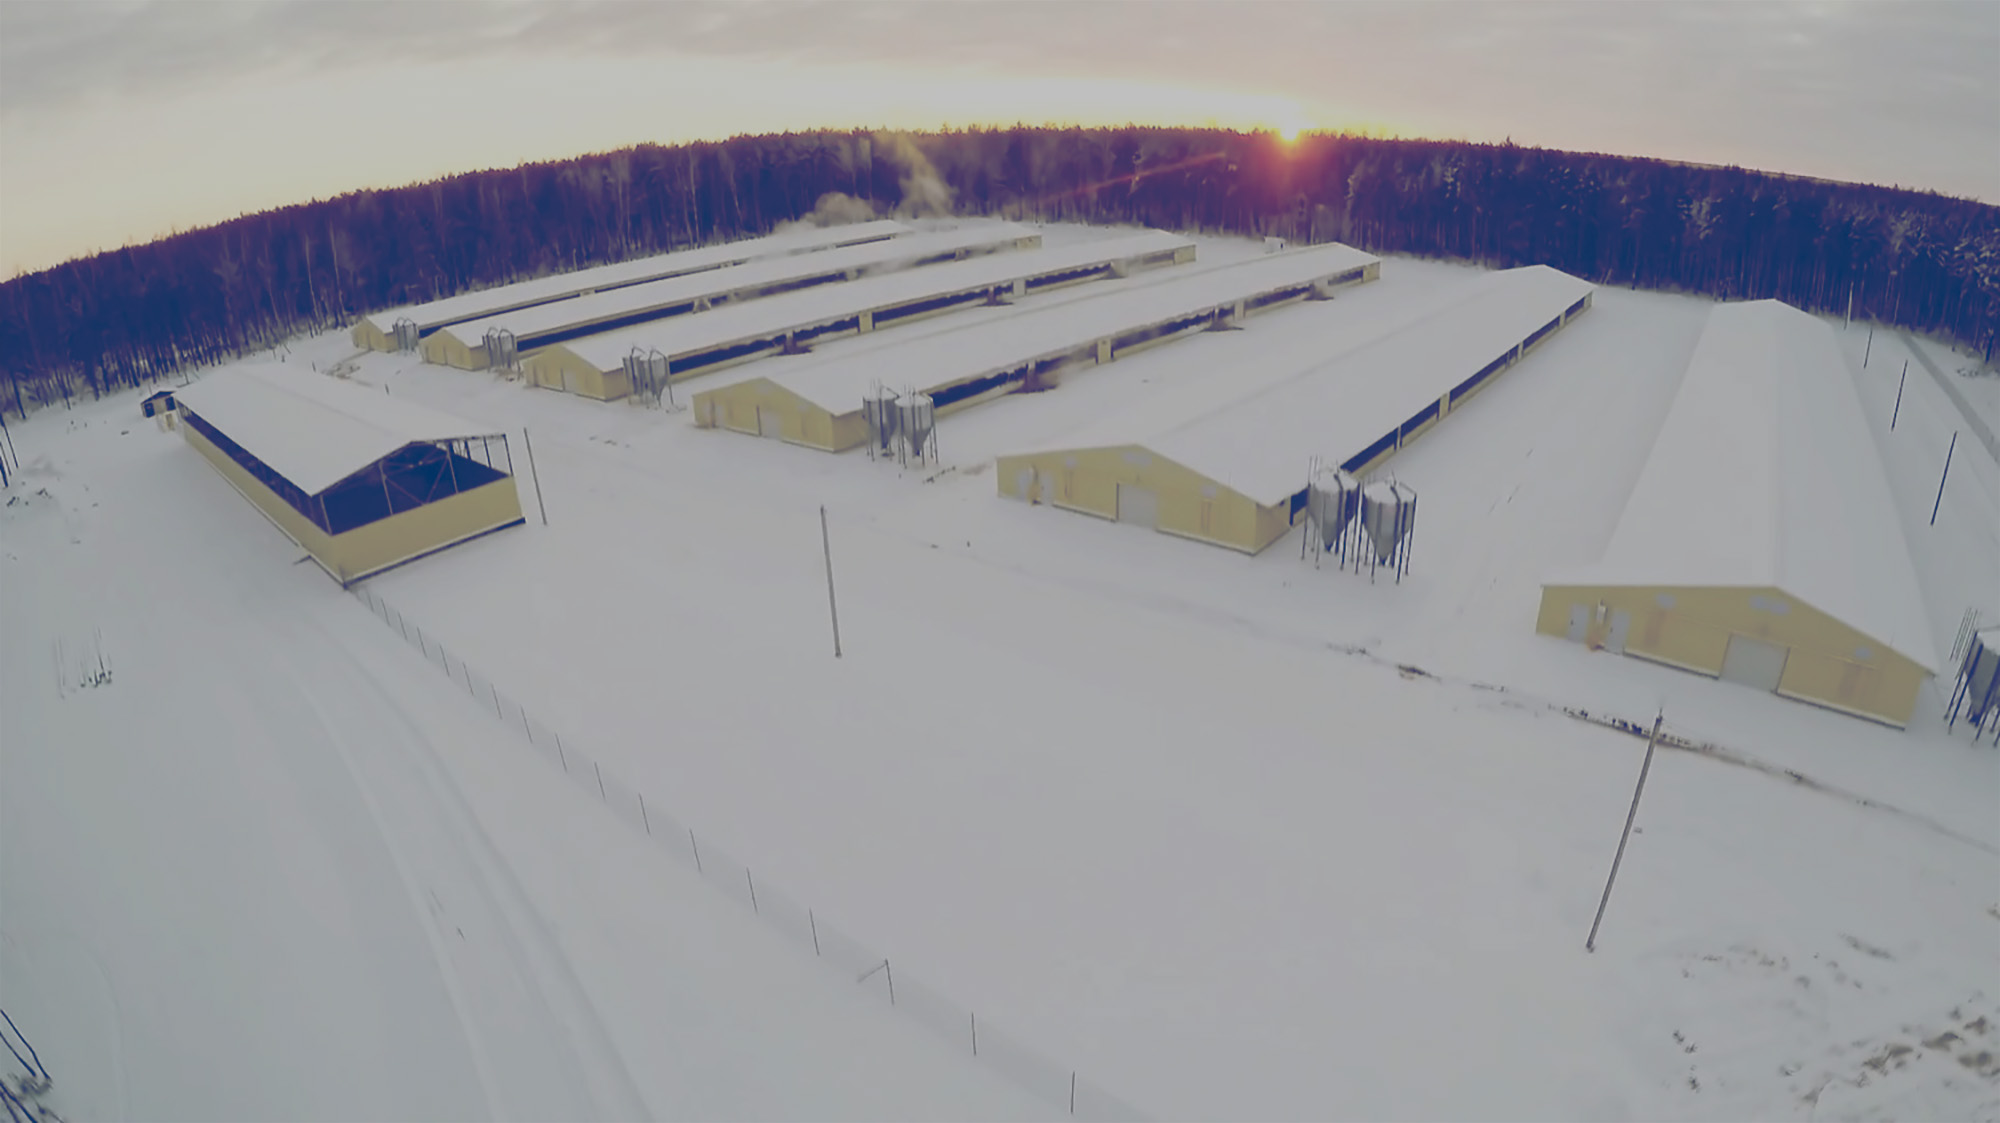 Industrial sized farm in winter. 